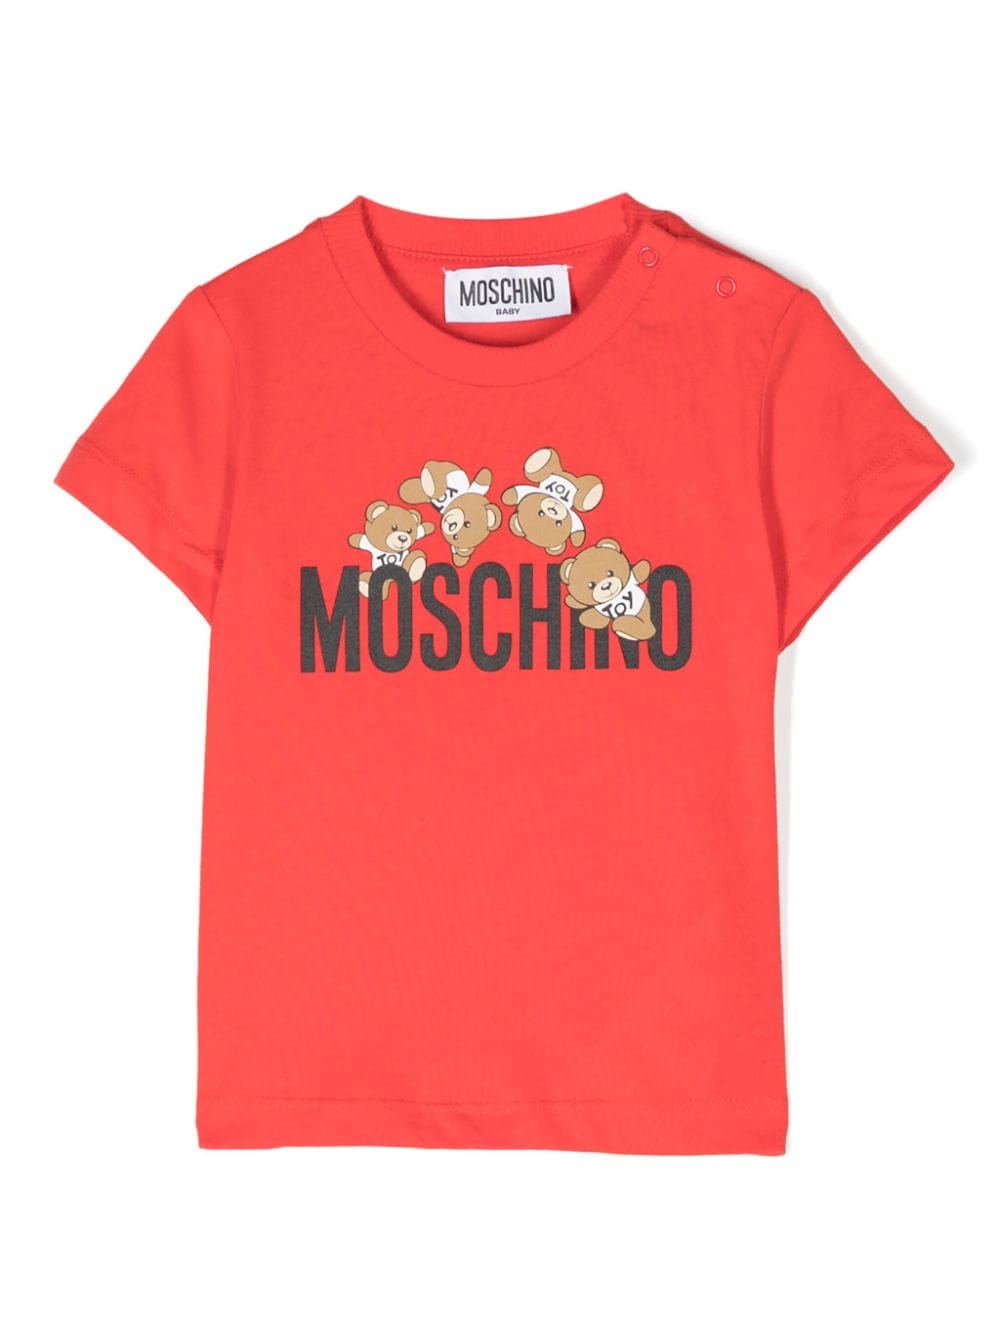 T-shirt rossa per neonato con logo